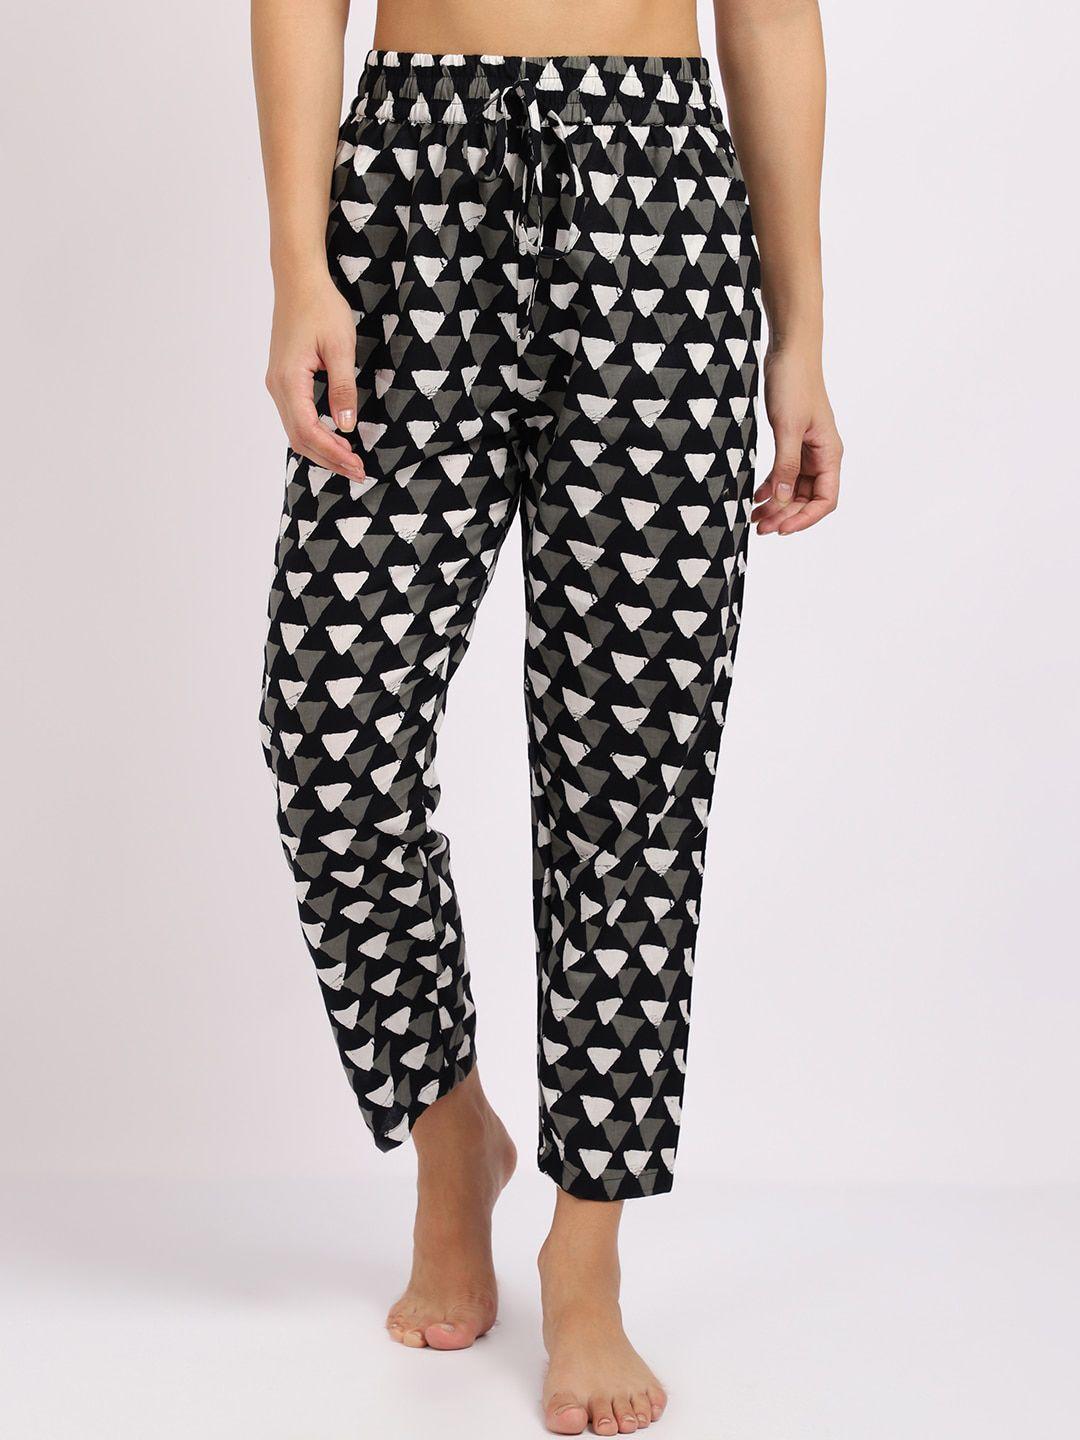 tag 7 women black & white geometric printed cotton lounge pants